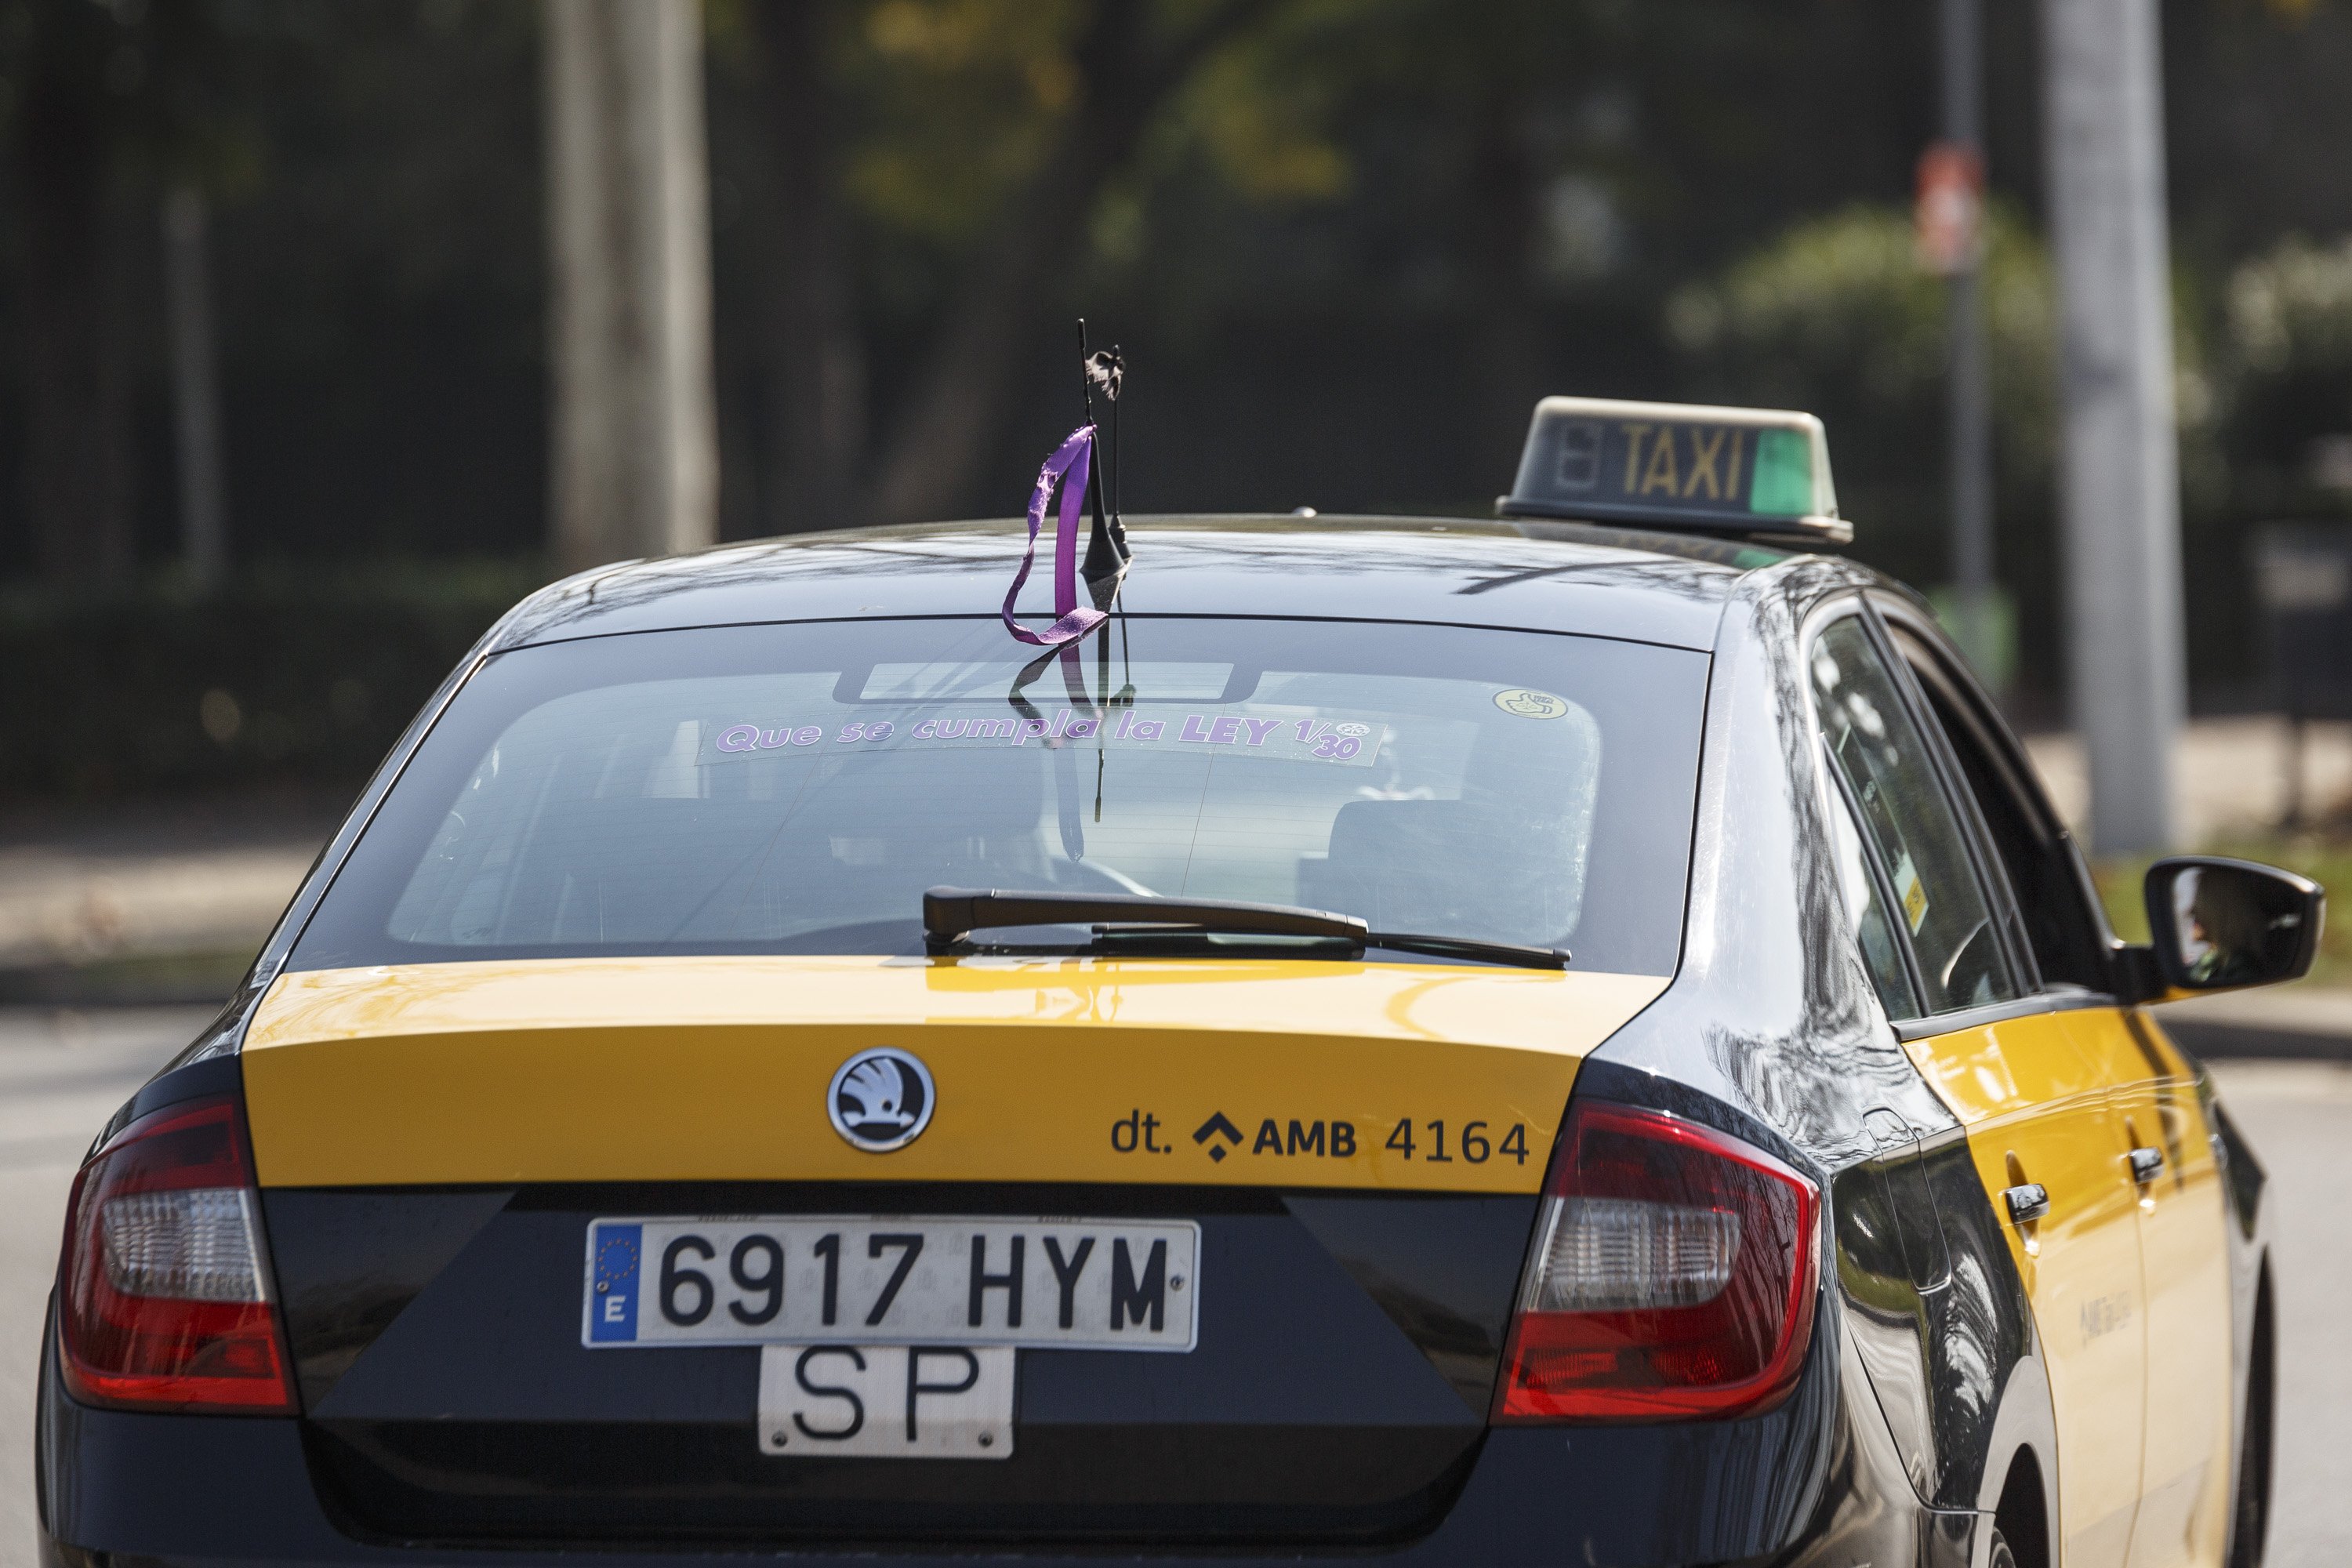 Lanzan una tarifa de taxi con precio cerrado a través de una app en Barcelona